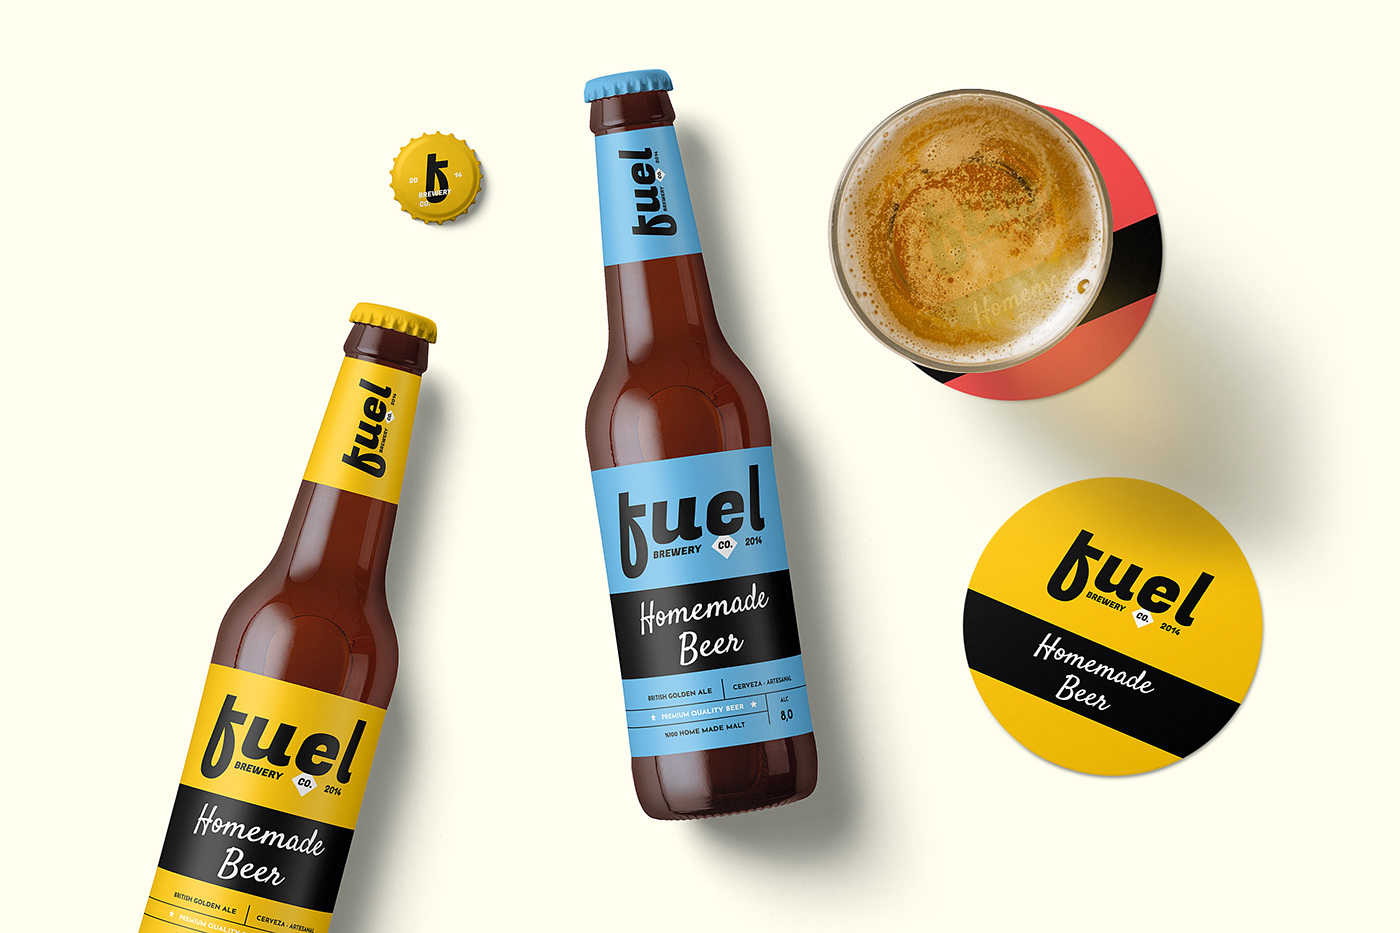 beer brewery brewe Label Packaging design free Mockup psd mockup branding 